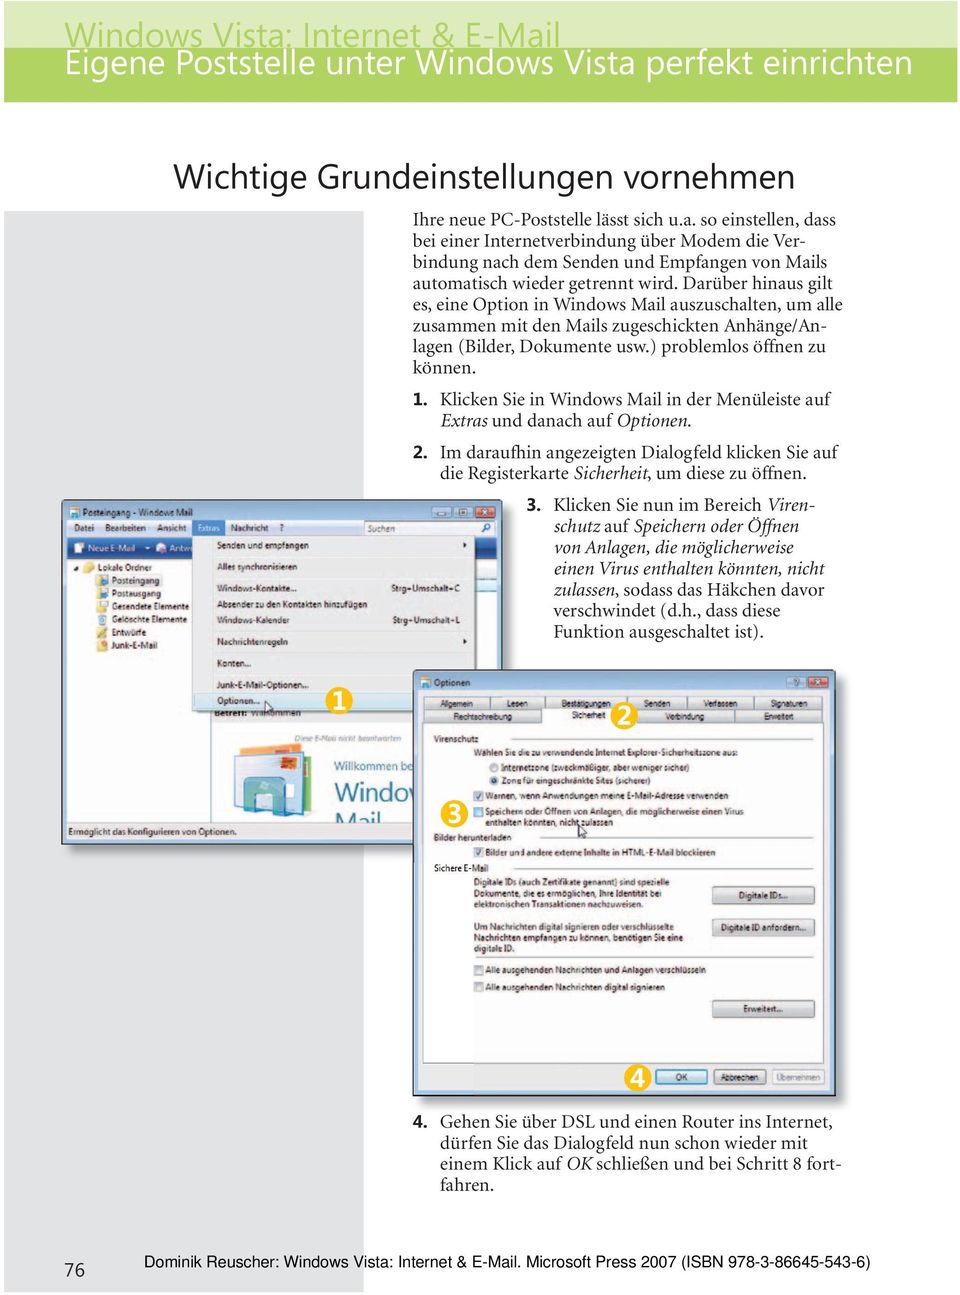 Klicken Sie in Windows Mail in der Menüleiste auf Extras und danach auf Optionen. 2. Im daraufhin angezeigten Dialogfeld klicken Sie auf die Registerkarte Sicherheit, um diese zu öffnen. 3.